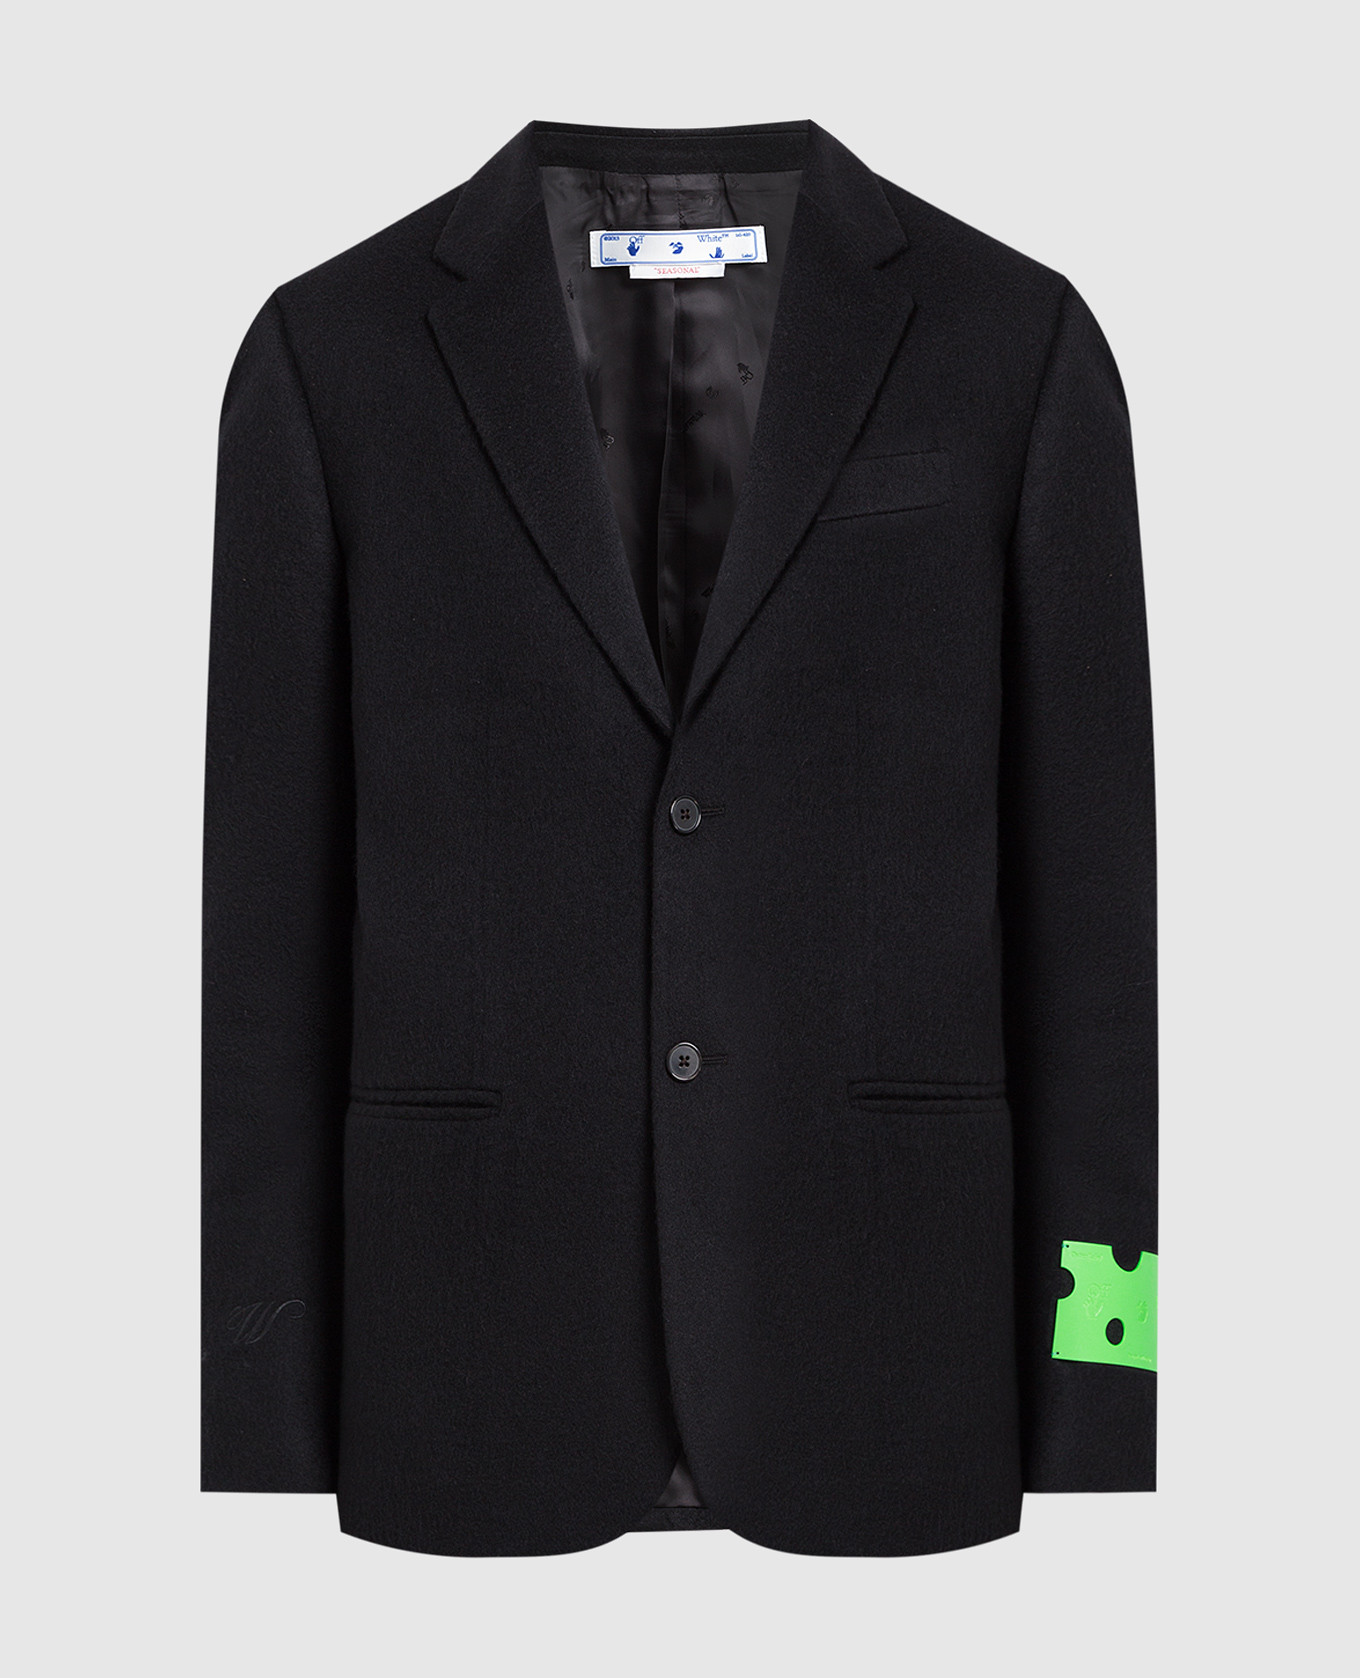 Black cashmere blazer with logo patch